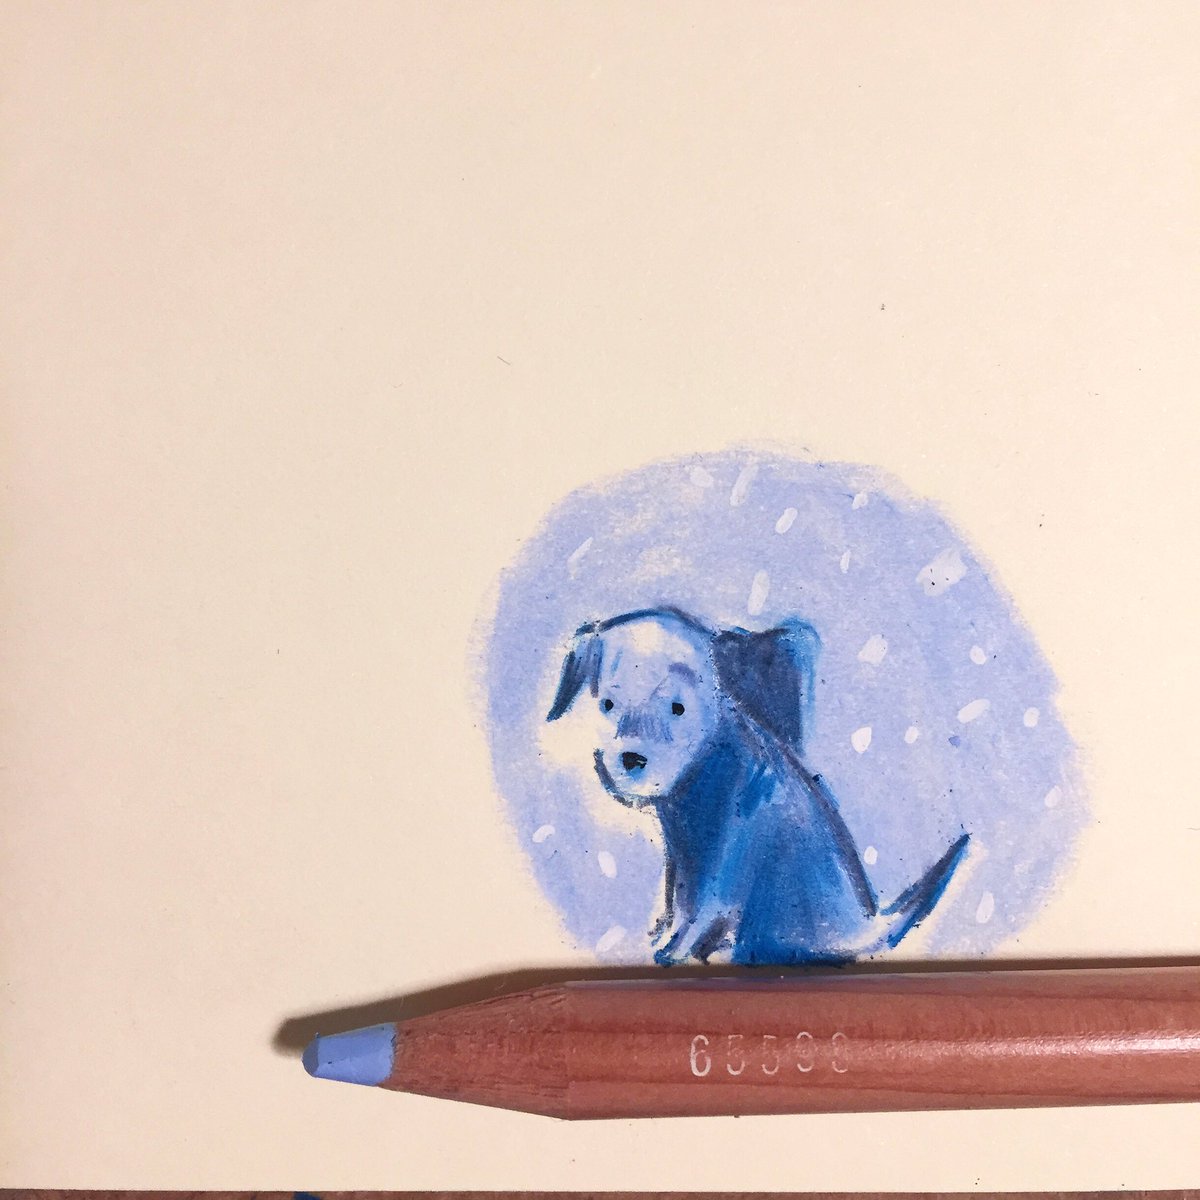 A tiny pup on a pencil. 

#sketchbook #carandacheluminance